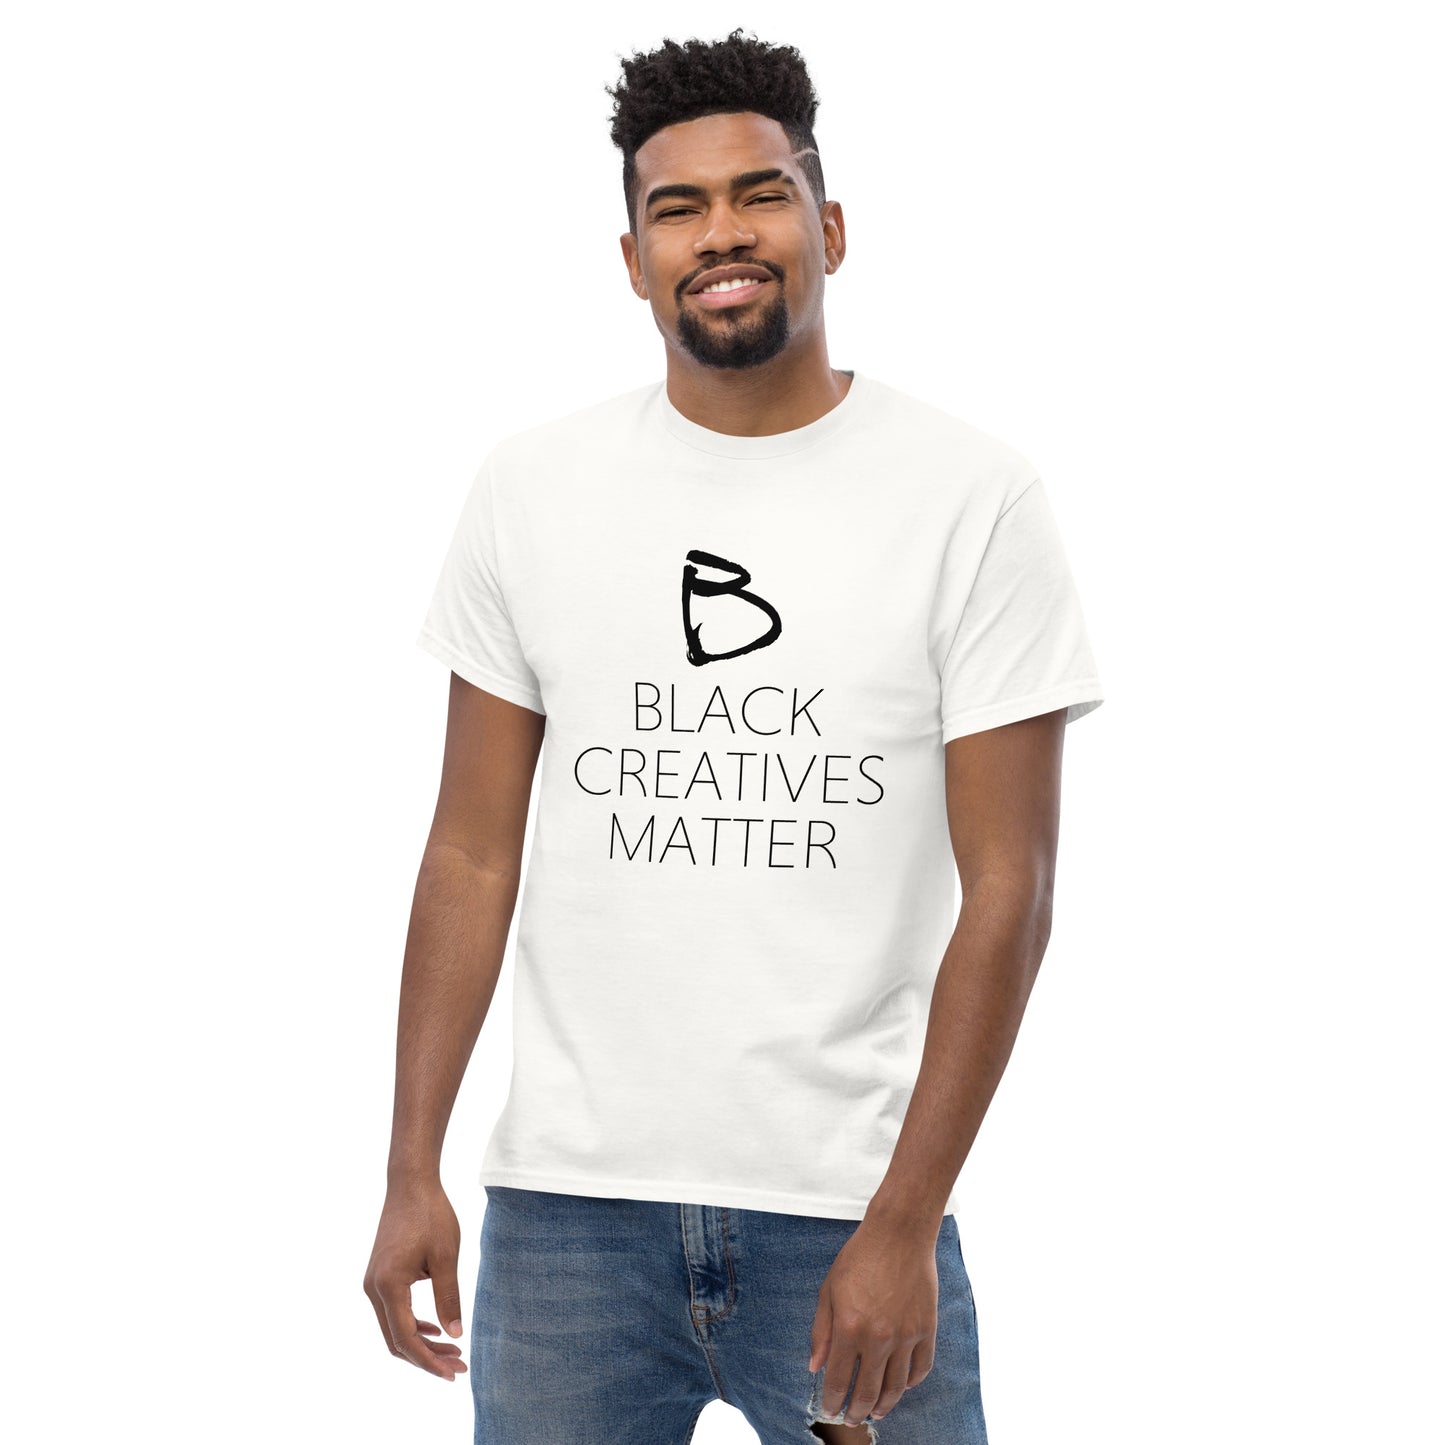 Black Creatives Matter tee